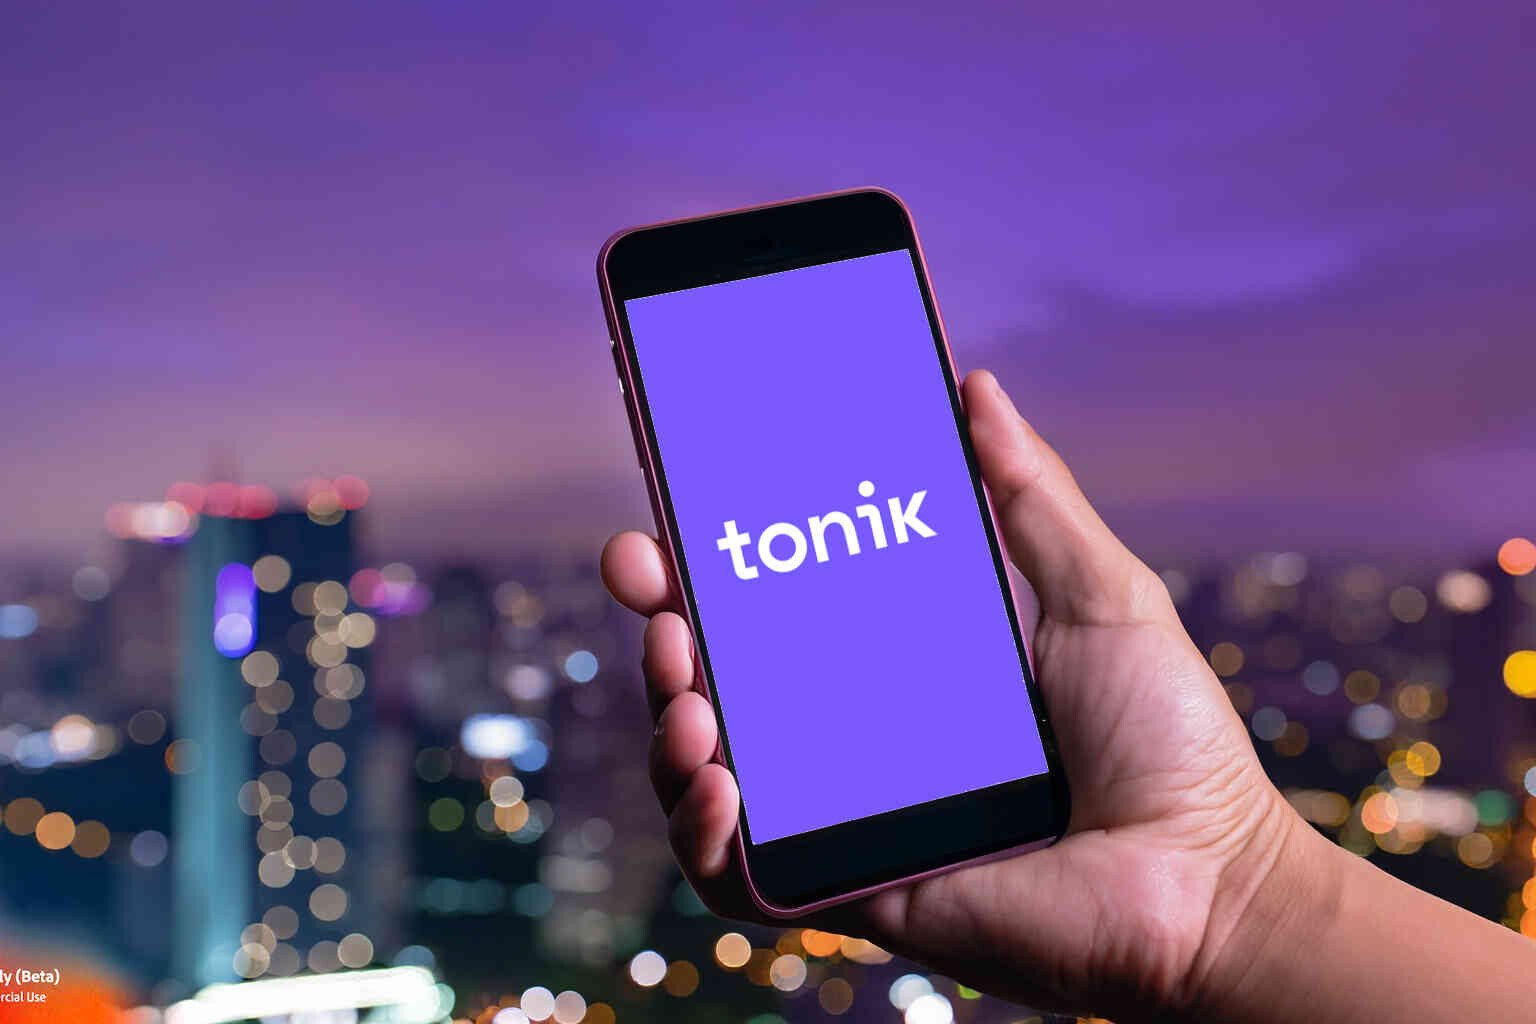 Hand holding a phone displaying Tonik logo